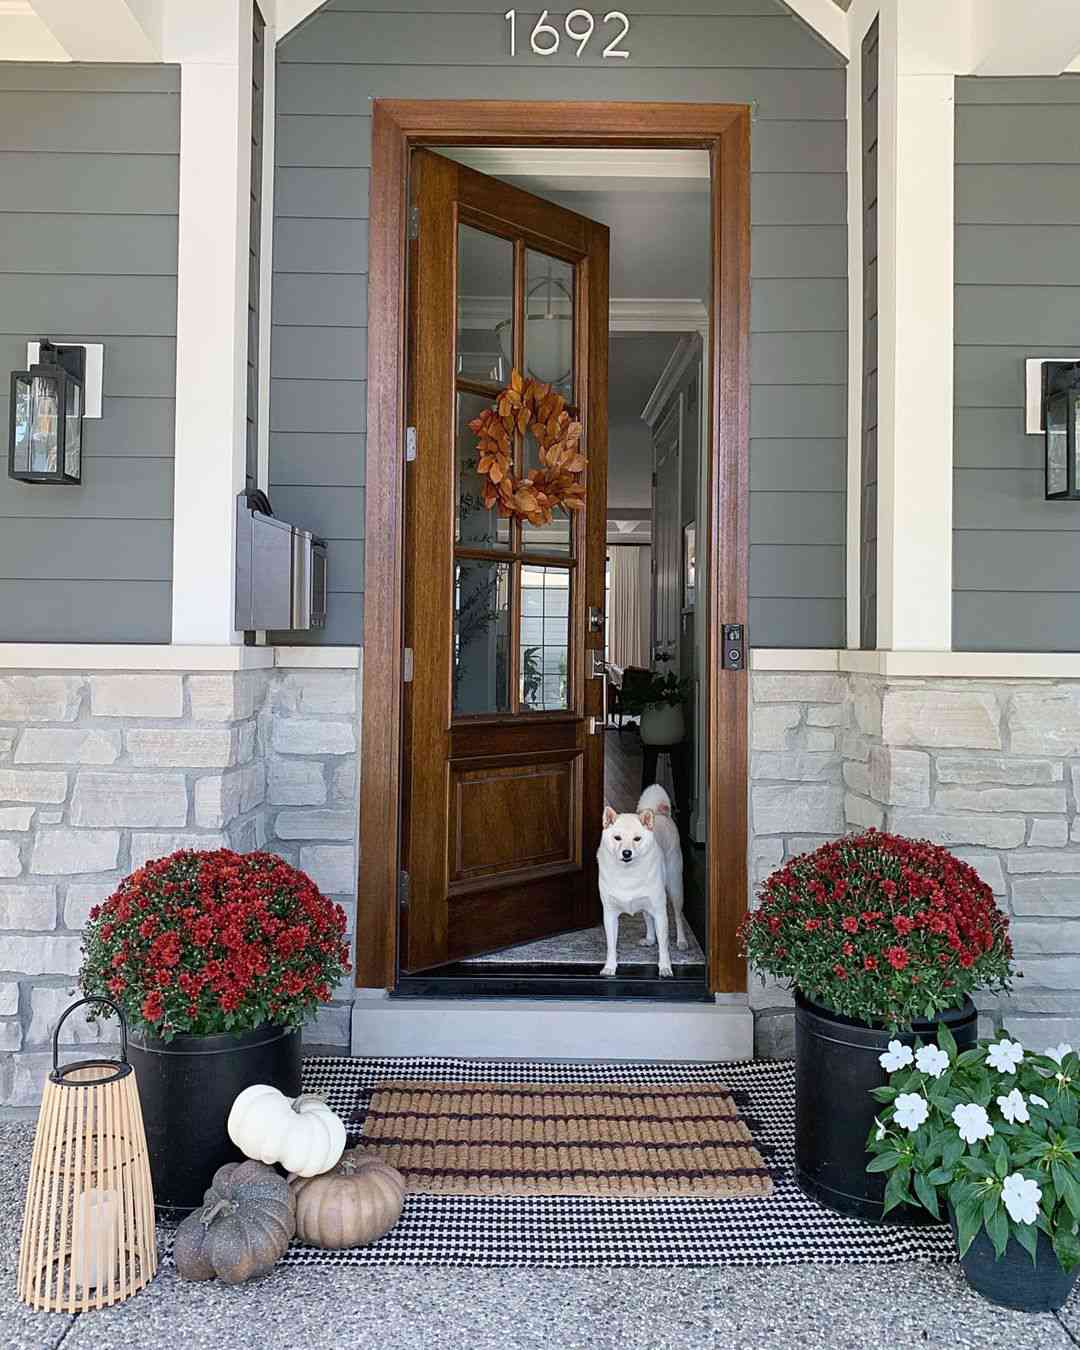 Veranda im Landhausstil mit hölzerner Eingangstür, geschichteten Matten und Herbstdekor